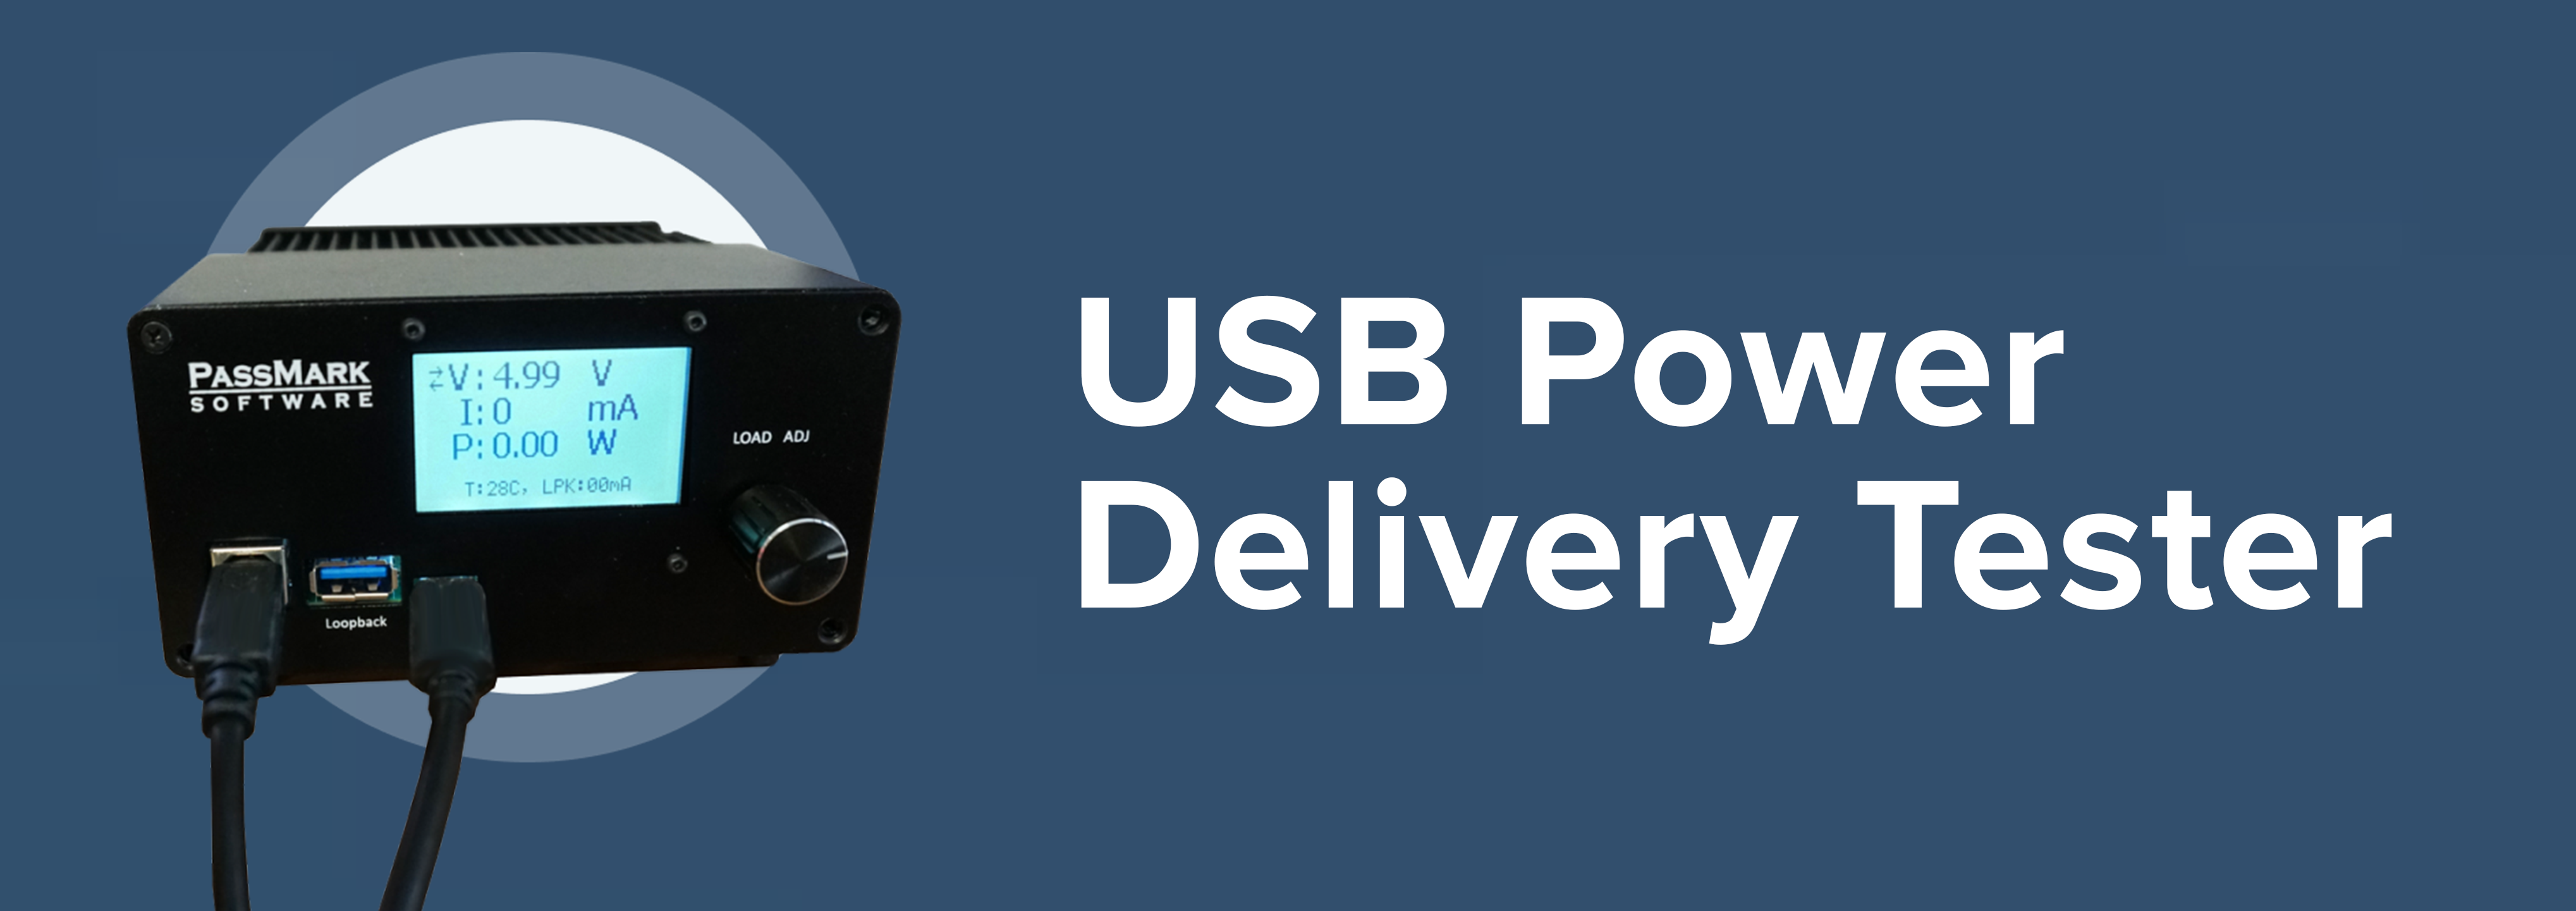 USB Power Deliver Tester